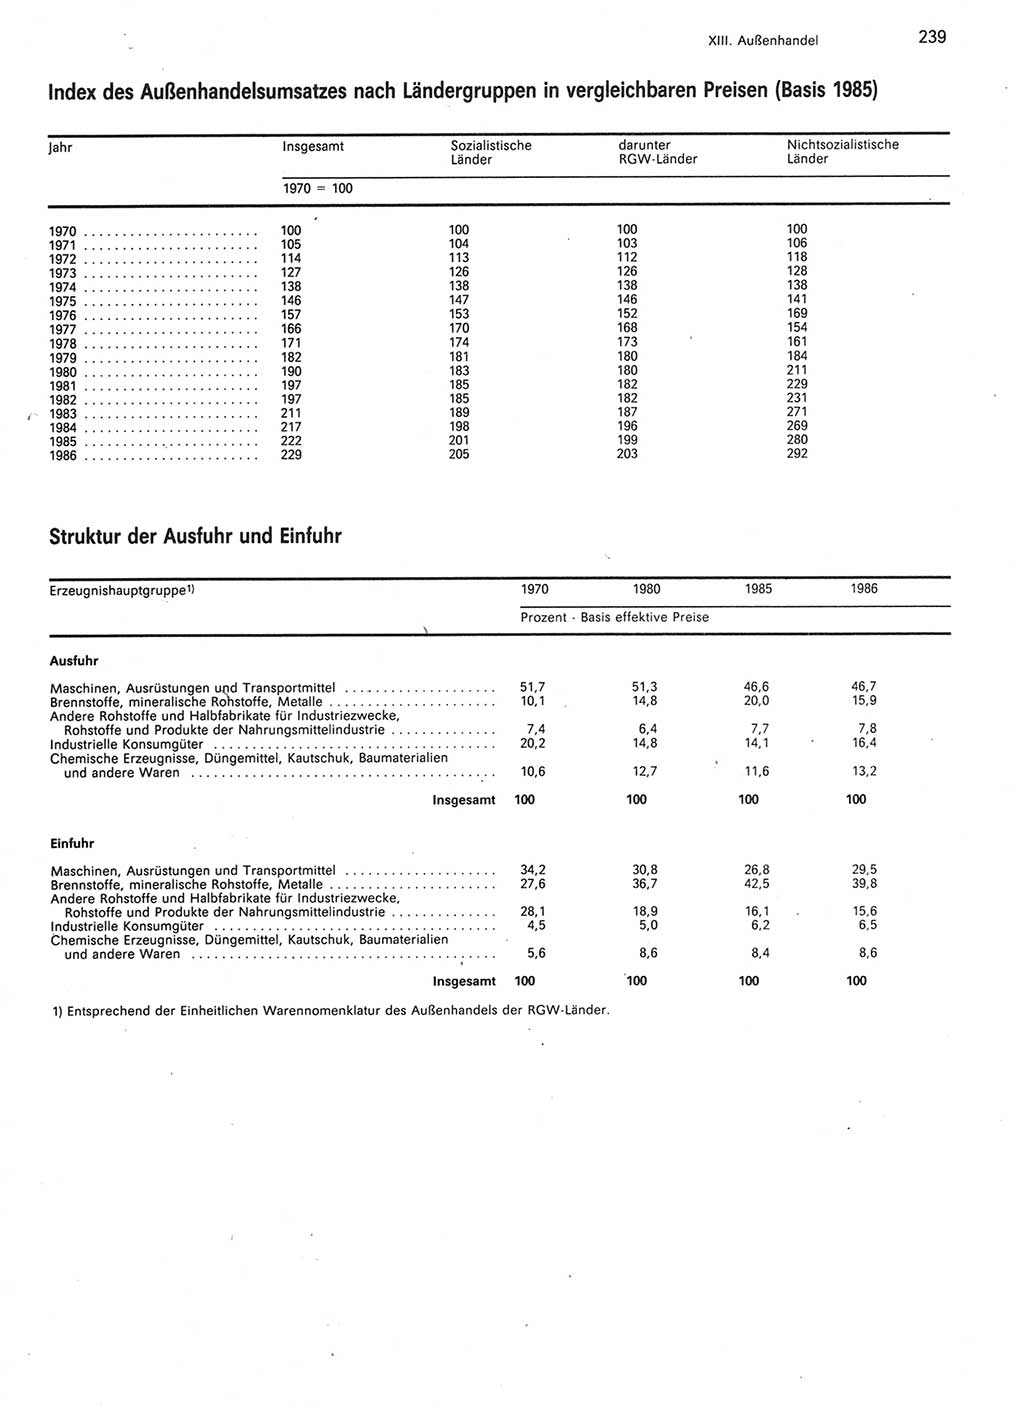 Statistisches Jahrbuch der Deutschen Demokratischen Republik (DDR) 1987, Seite 239 (Stat. Jb. DDR 1987, S. 239)